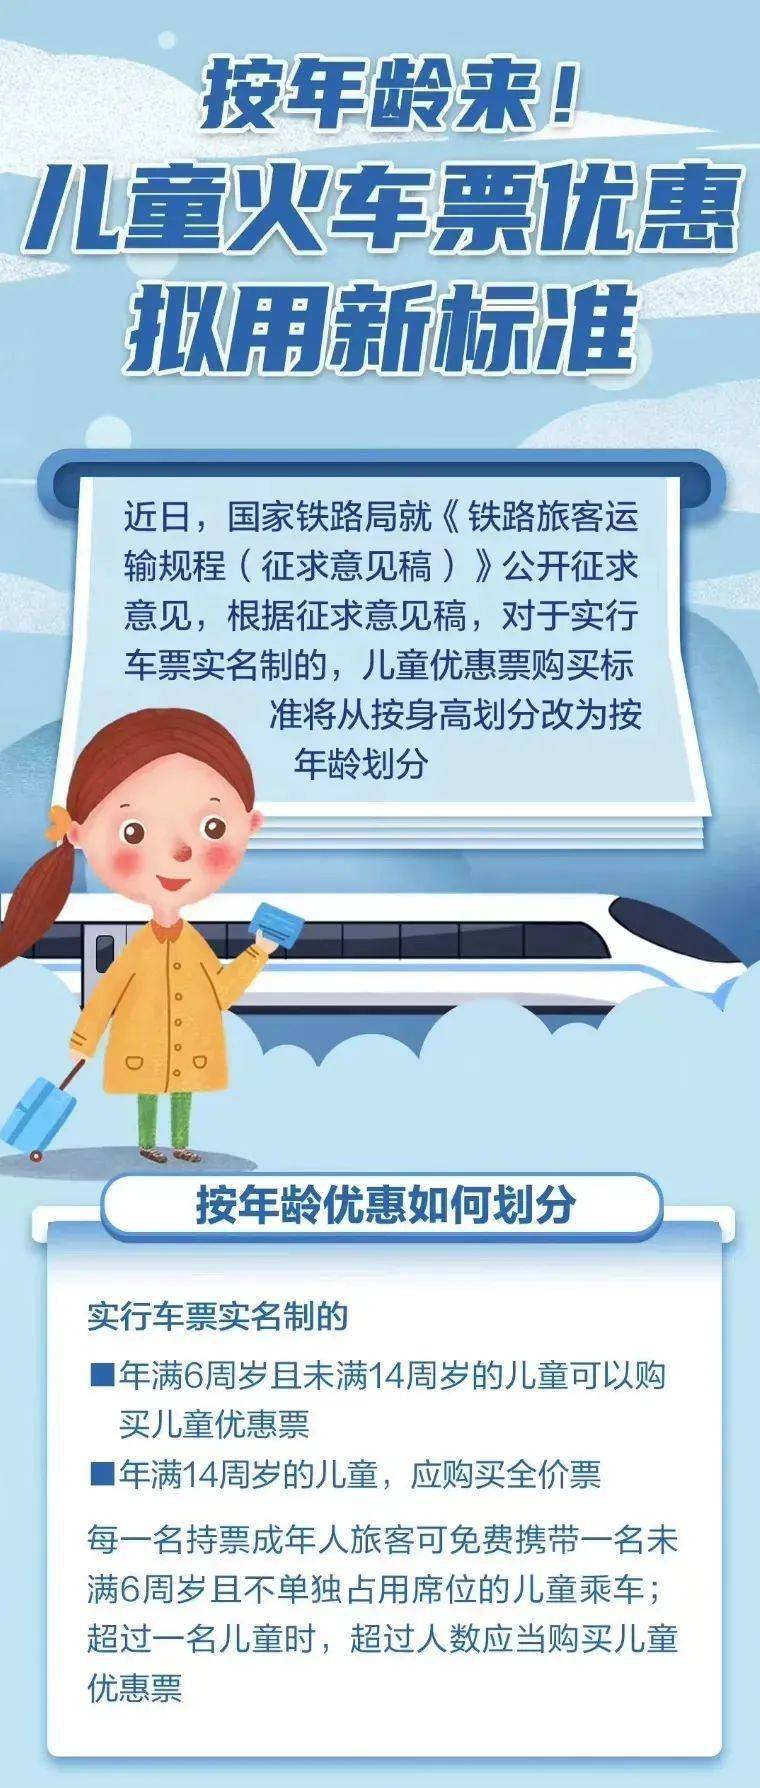 按年龄划分儿童火车票优惠拟用新标准详情